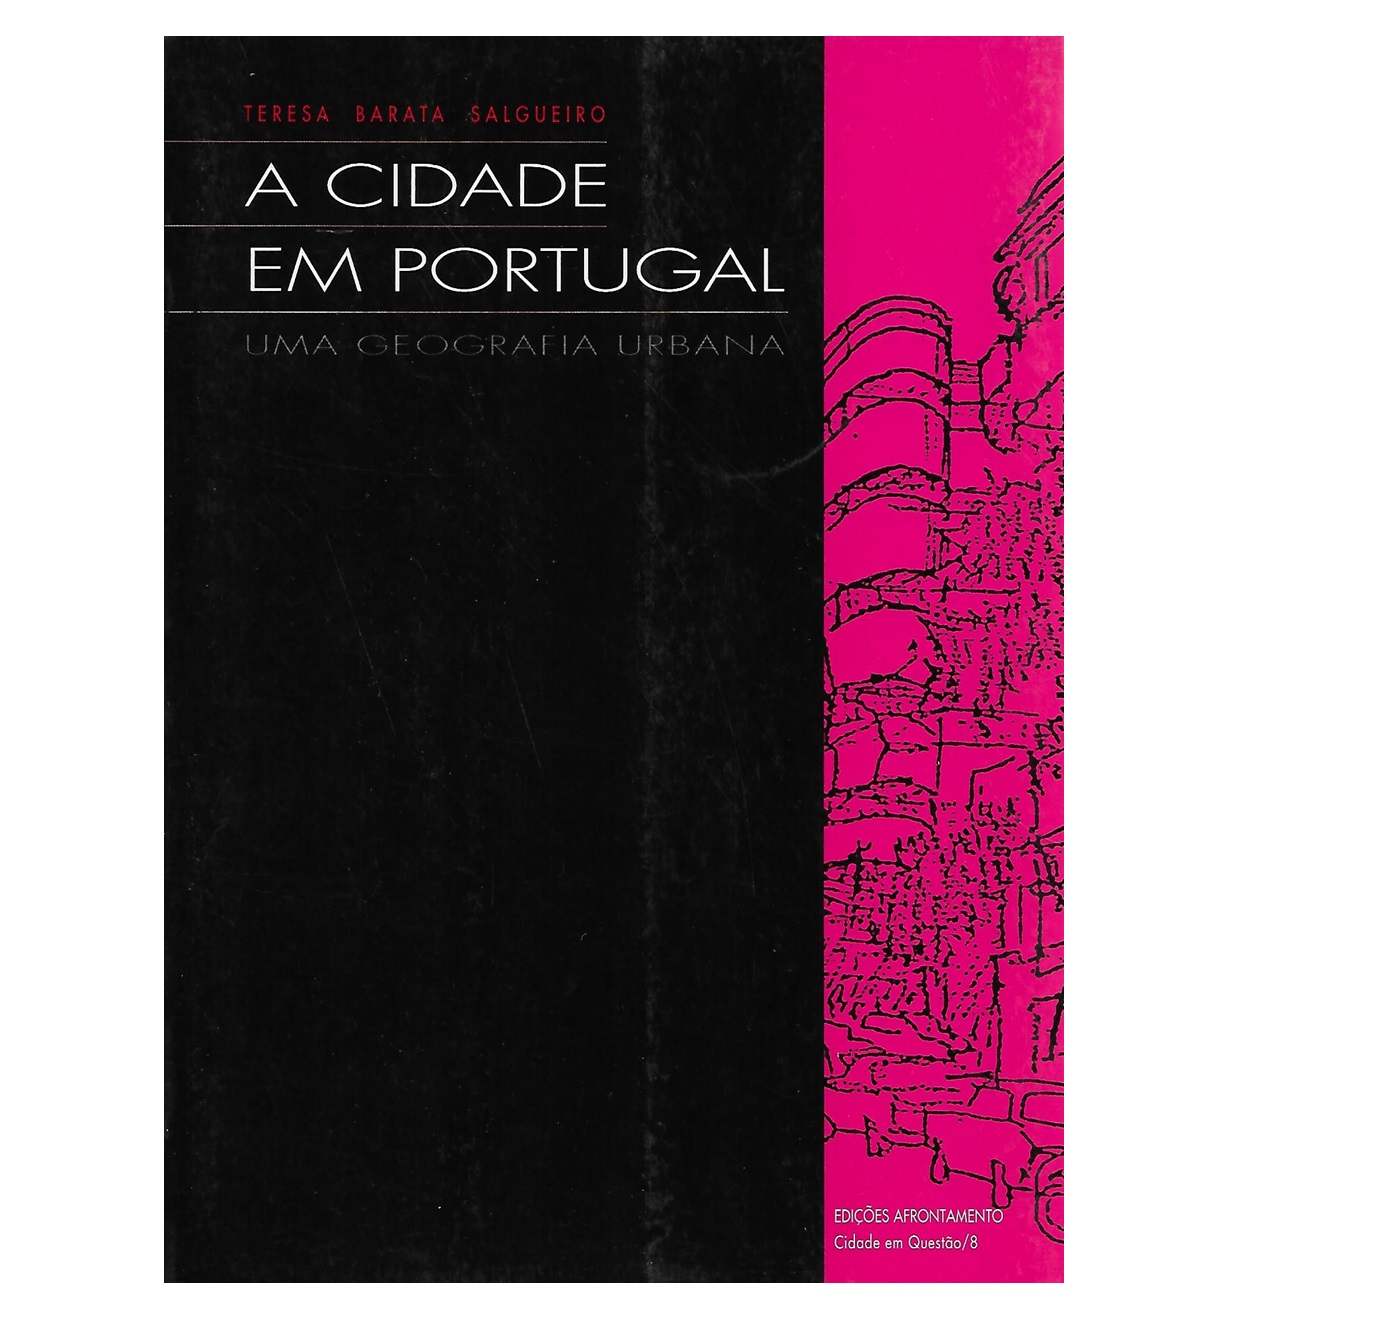 A CIDADE EM PORTUGAL: Uma Geografia Urbana